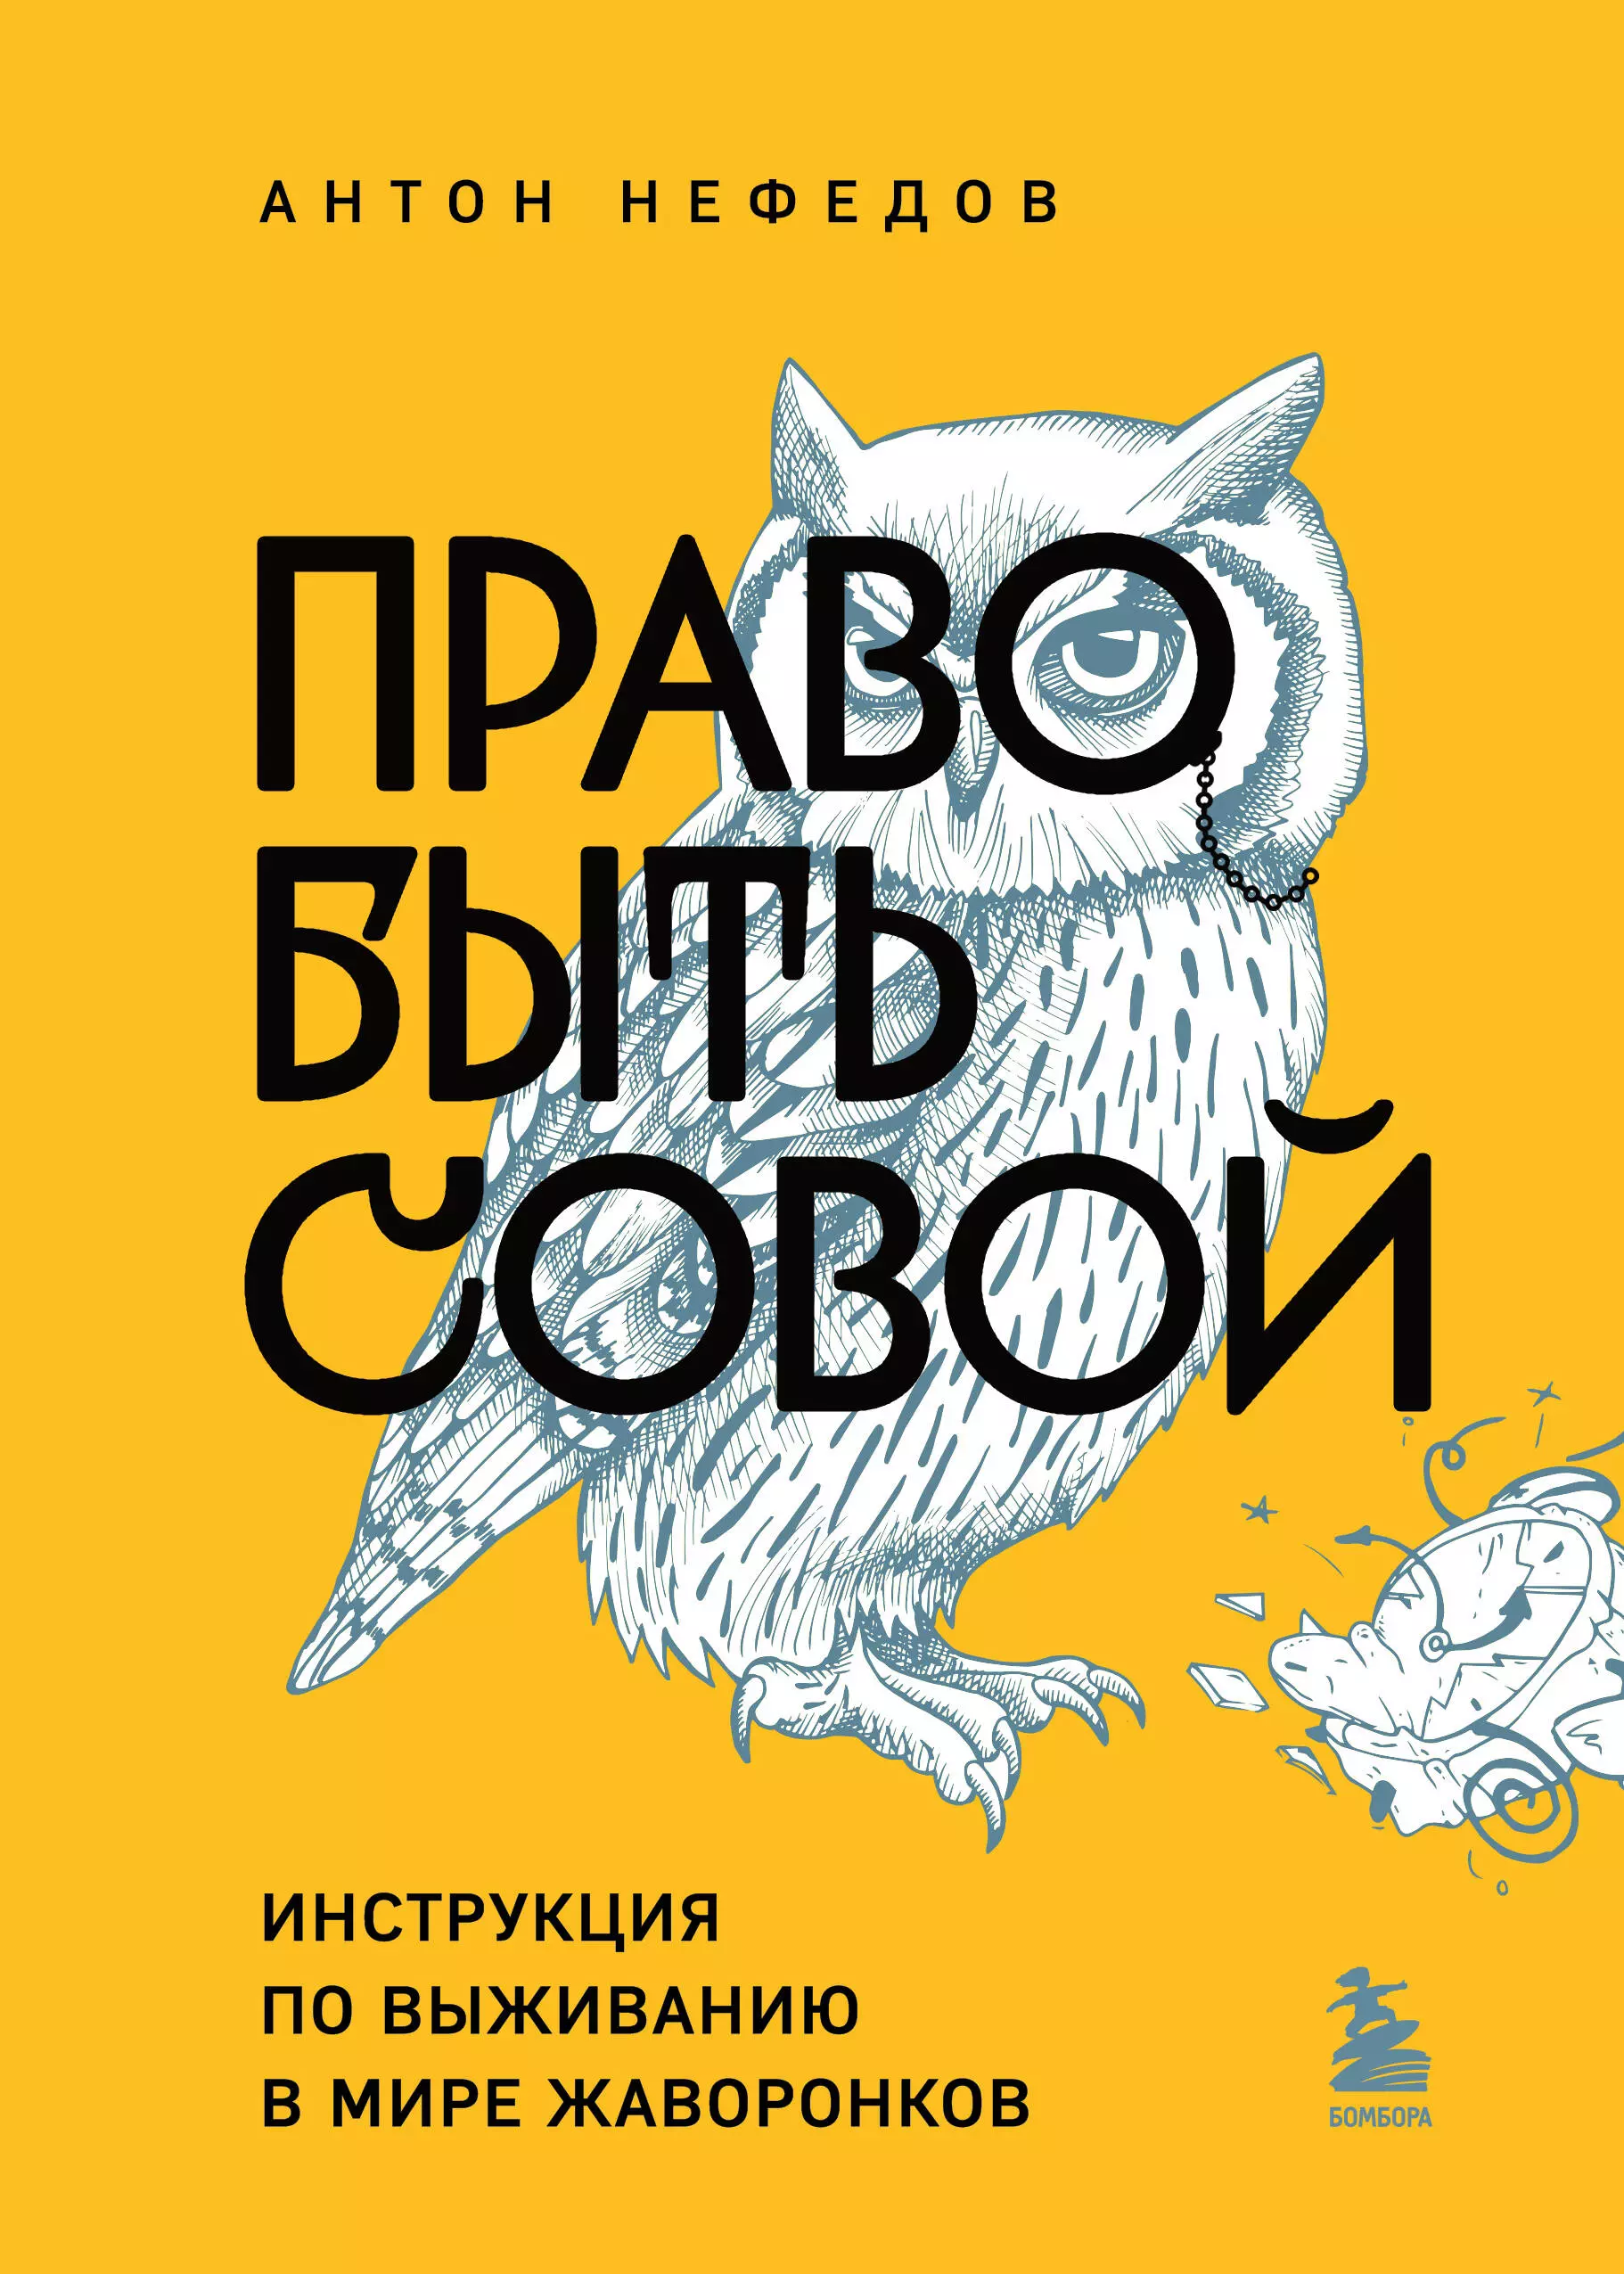 Нефедов Антон - Право быть совой. Инструкция по выживанию в мире жаворонков